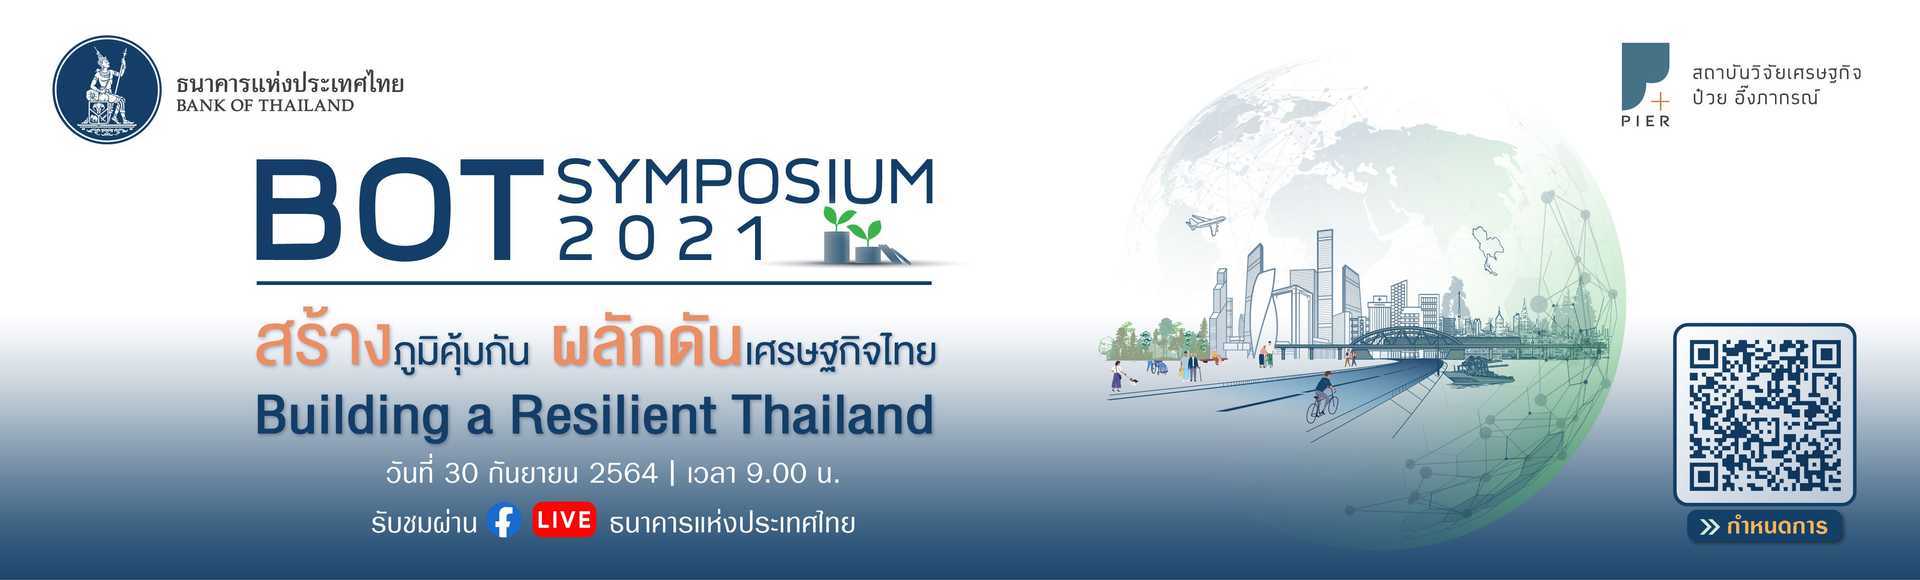 BOT Symposium 2021: สร้างภูมิคุ้มกัน ผลักดันเศรษฐกิจไทย